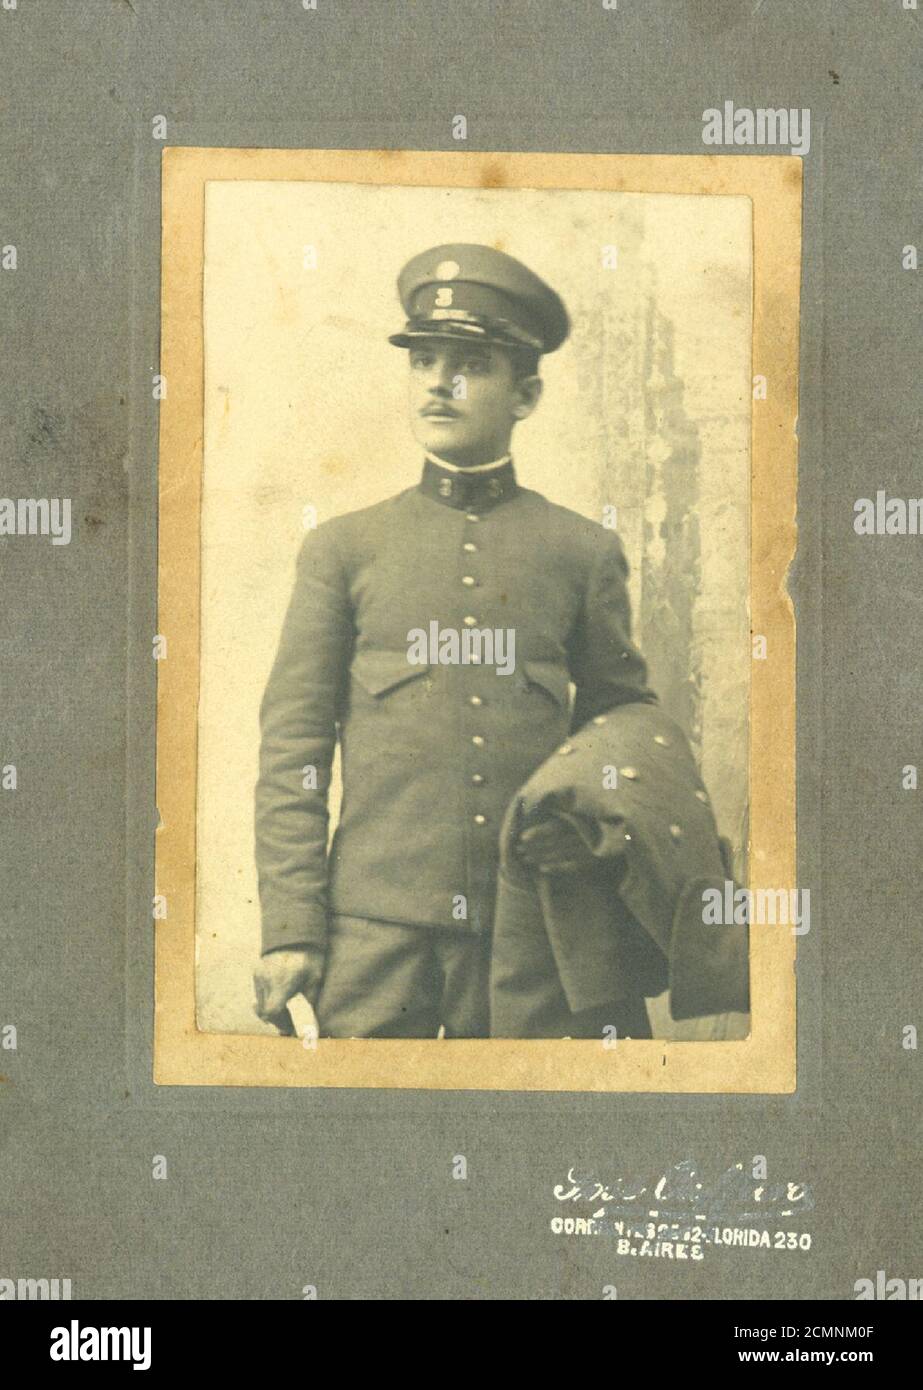 Juan De Salvo -luego mas conocido como Juan Desalvo- Buenos Aires, 23-6-1882 - 3-8-1949. Foto hacia 1902 como soldado del Regimiento 3 de Infantería. Stock Photo